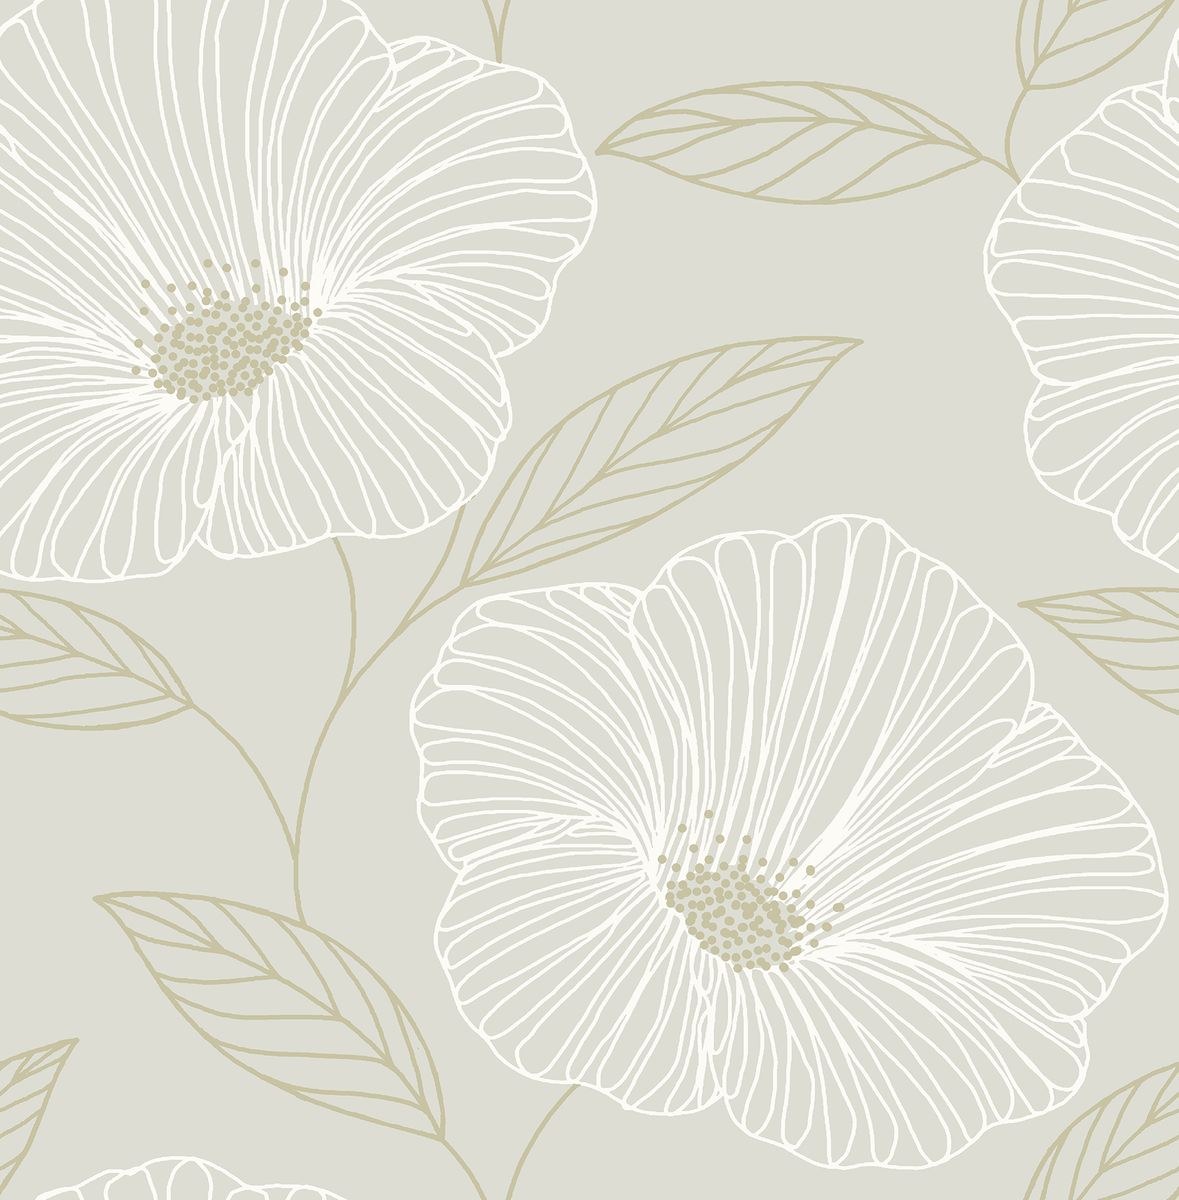 楽天Walmart 楽天市場店[送料無料] ブリュースター神話ライトグレー花柄壁紙 [楽天海外通販] | Brewster Mythic Light Grey Floral Wallpaper